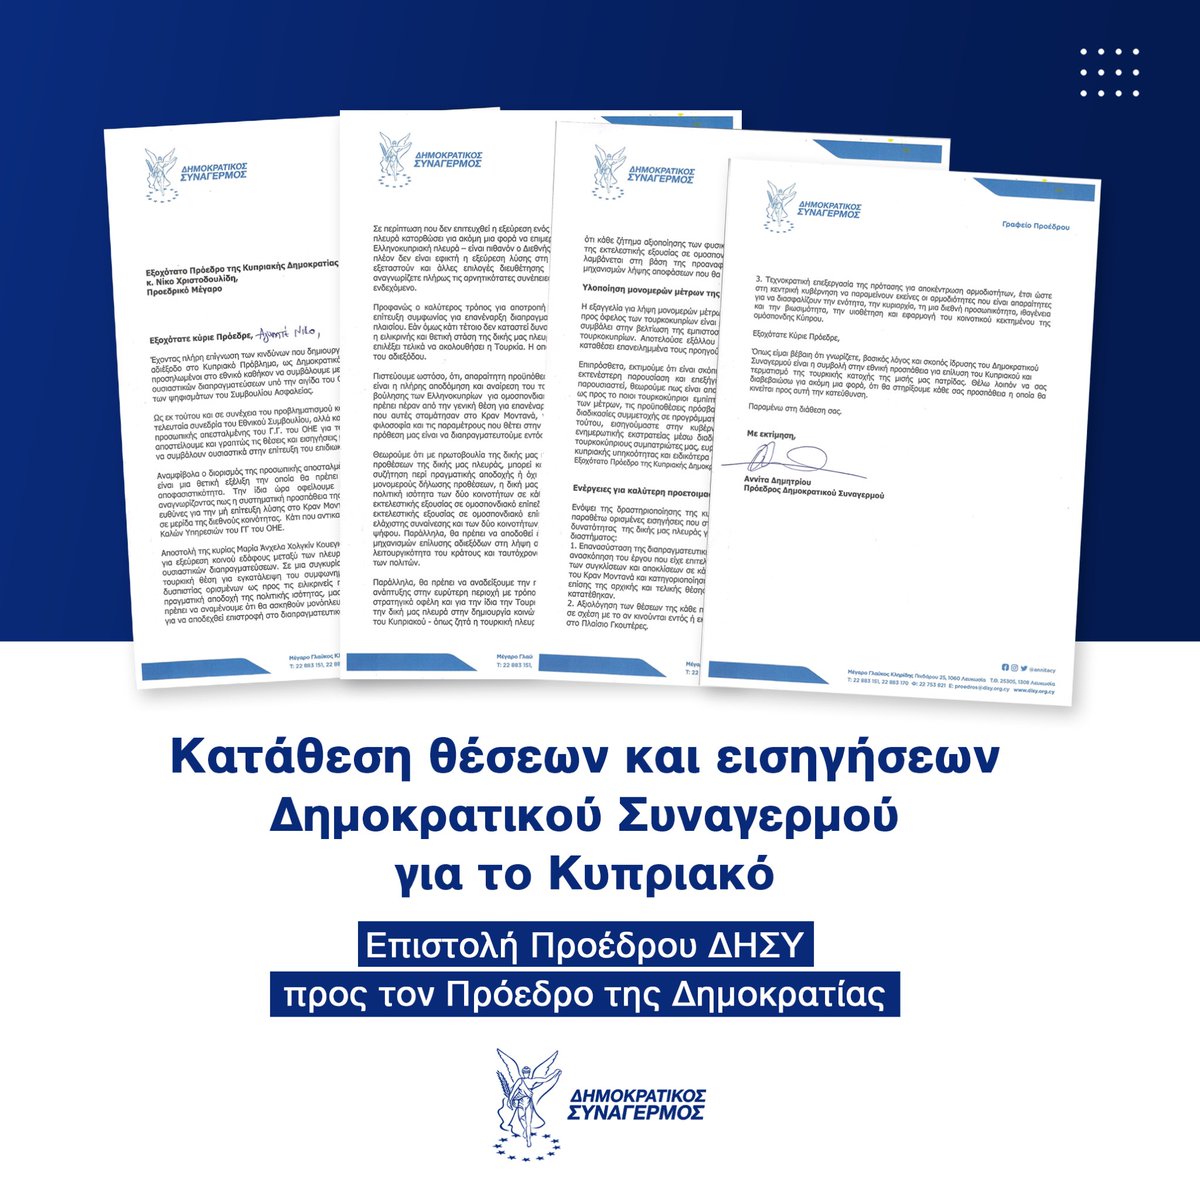 👉 #Επιστολή προς τον Πρόεδρο της Δημοκρατίας απέστειλε σήμερα η Πρόεδρος του Δημοκρατικού Συναγερμού @AnnitaDemetriou με επίκεντρο το #κυπριακό, ενόψει και των επερχόμενων συναντήσεων στην Κύπρο της προσωπικής απεσταλμένης του Γενικού Γραμματέα του ΟΗΕ. Η κ. Δημητρίου τονίζει…